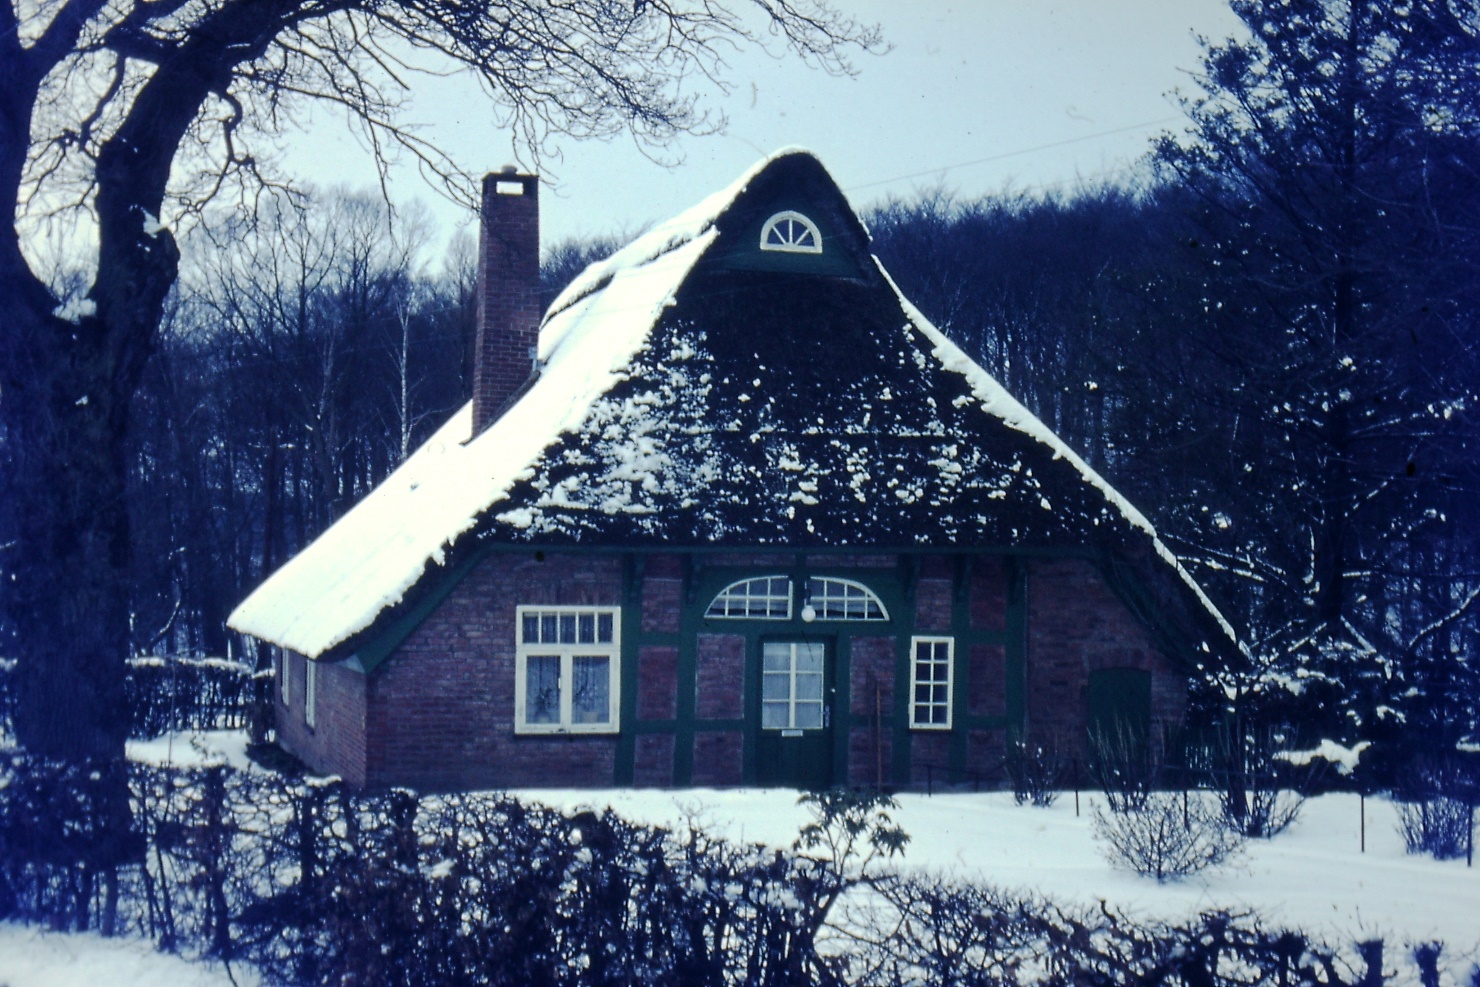 Ein Bild, das Gebäude, draußen, Baum, Schnee enthält.

Automatisch generierte Beschreibung